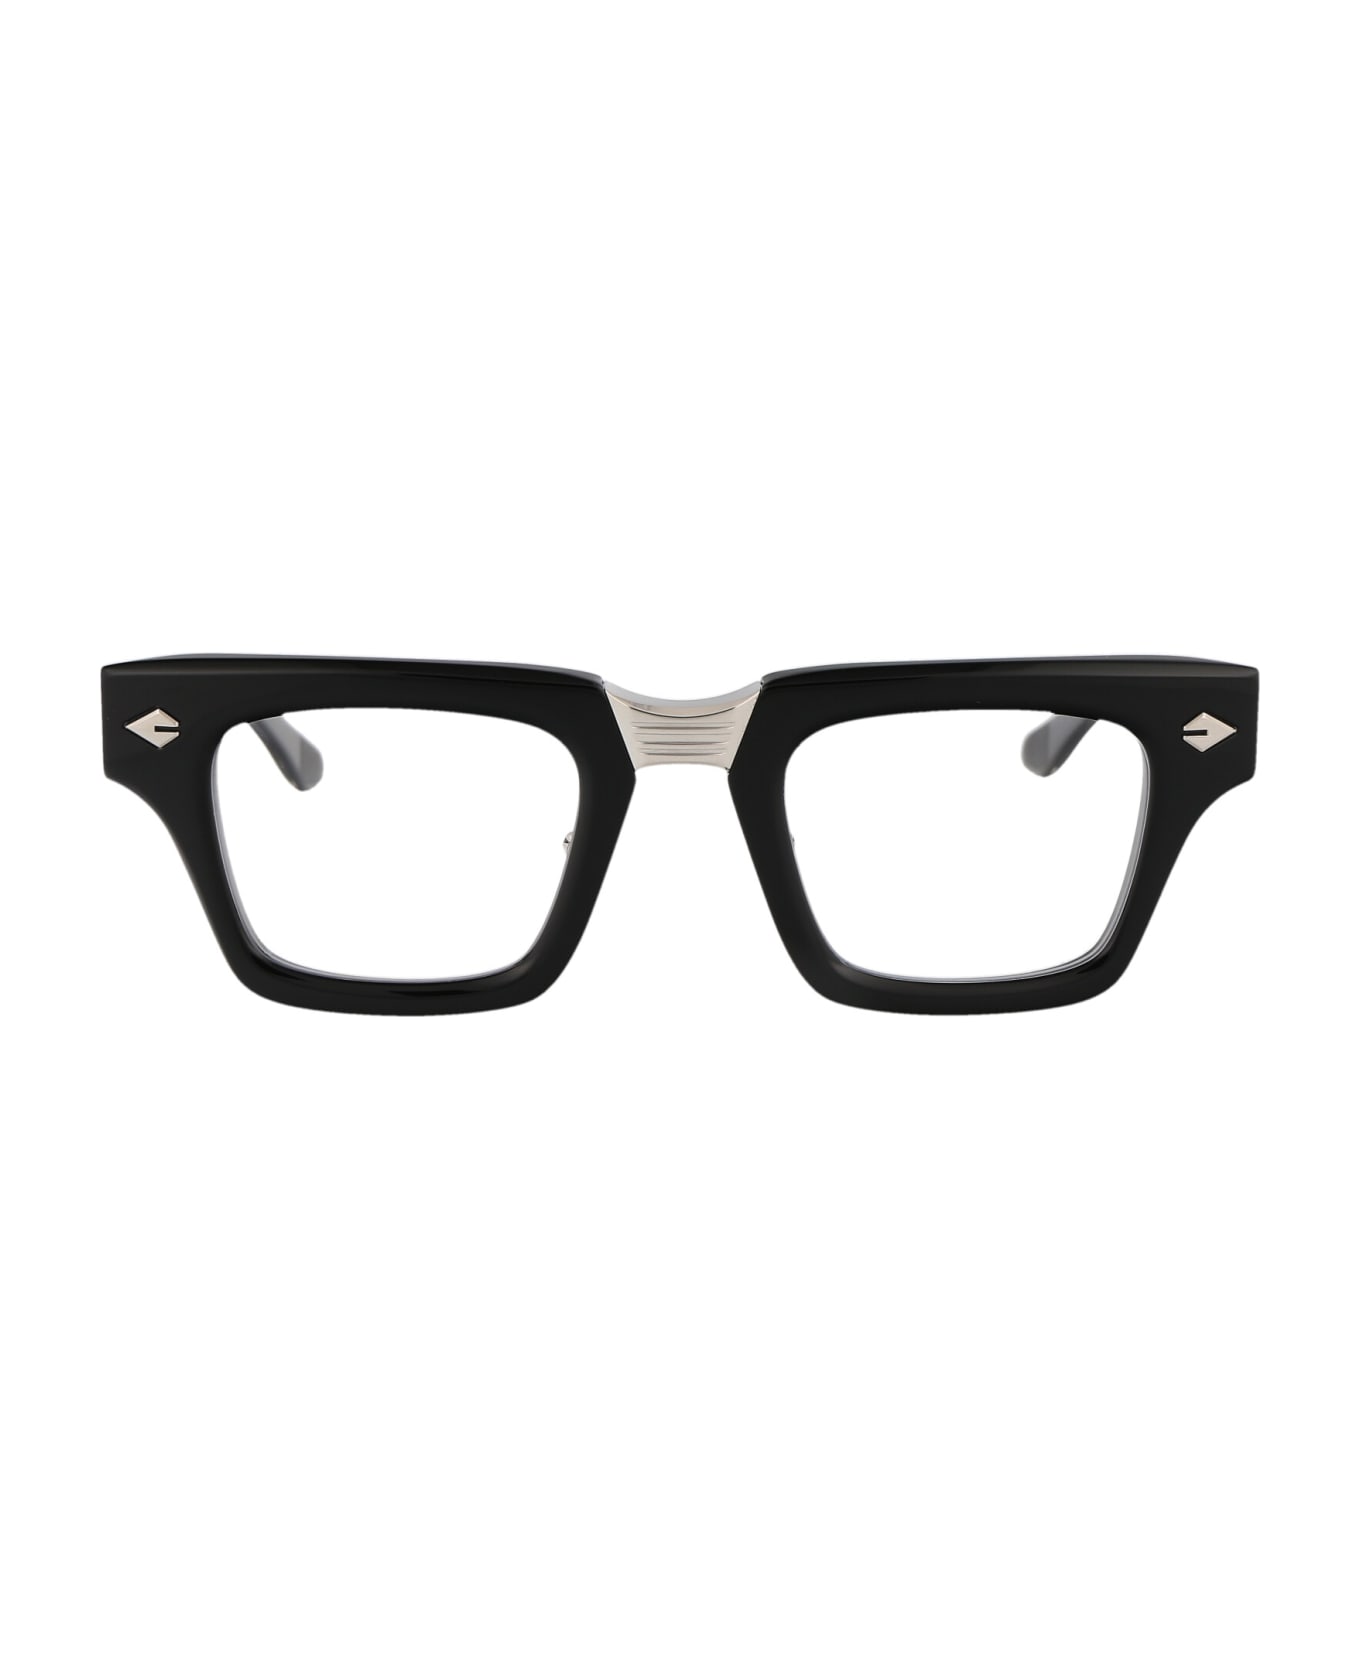 T Henri Corsa Rx Glasses - SHADOW